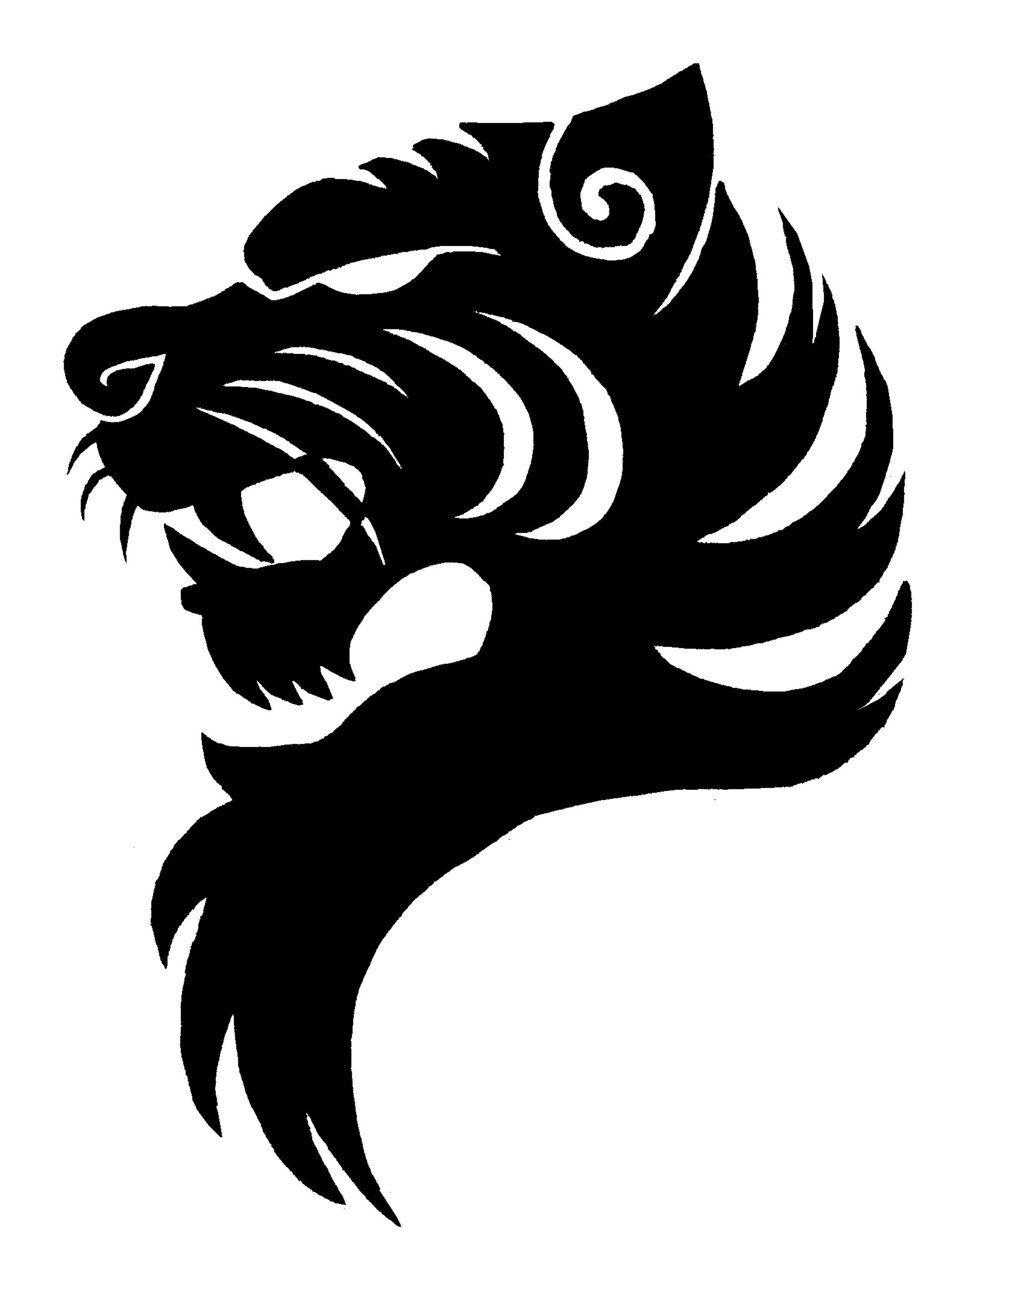 Panda Cool Logo - Tiger Logo Black And White Clipart Panda Free Clipart - Free Clipart